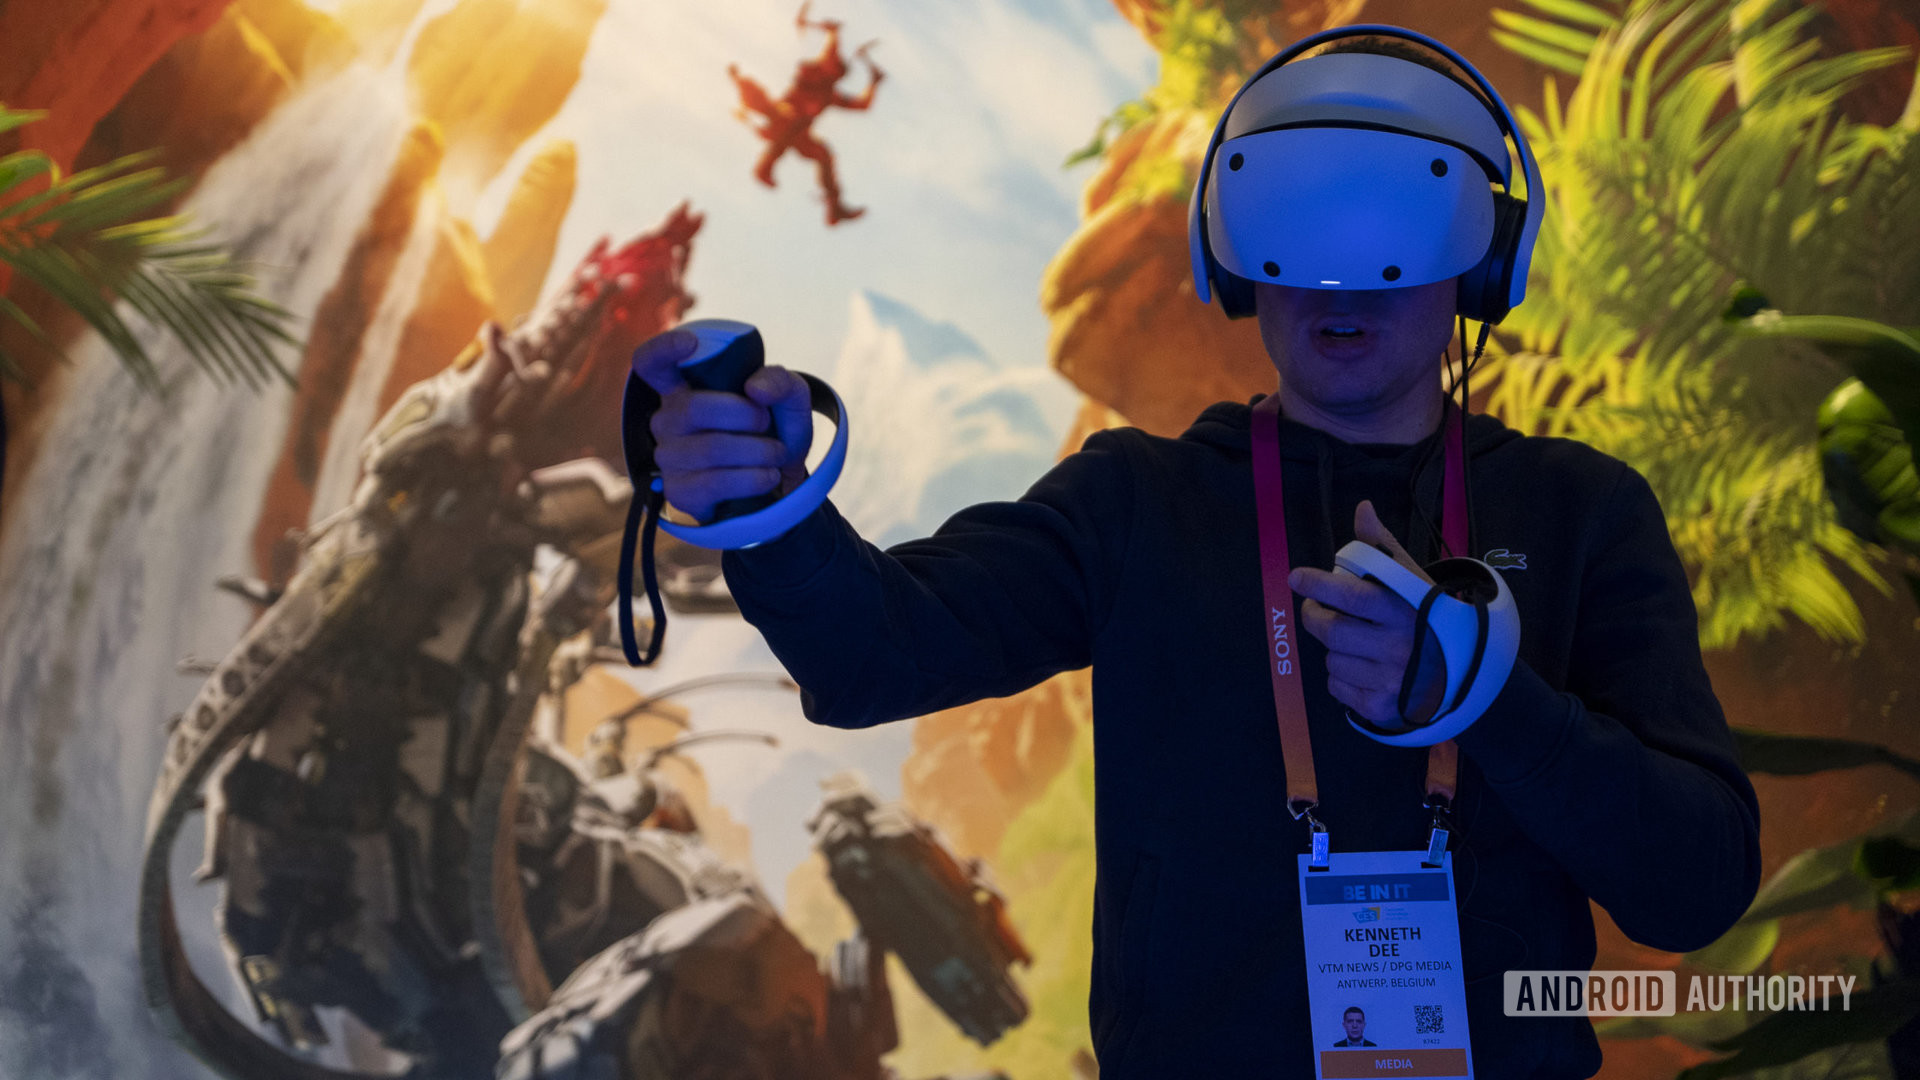 Sony Playstation VR2 6 लोग VR का परीक्षण कर रहे हैं